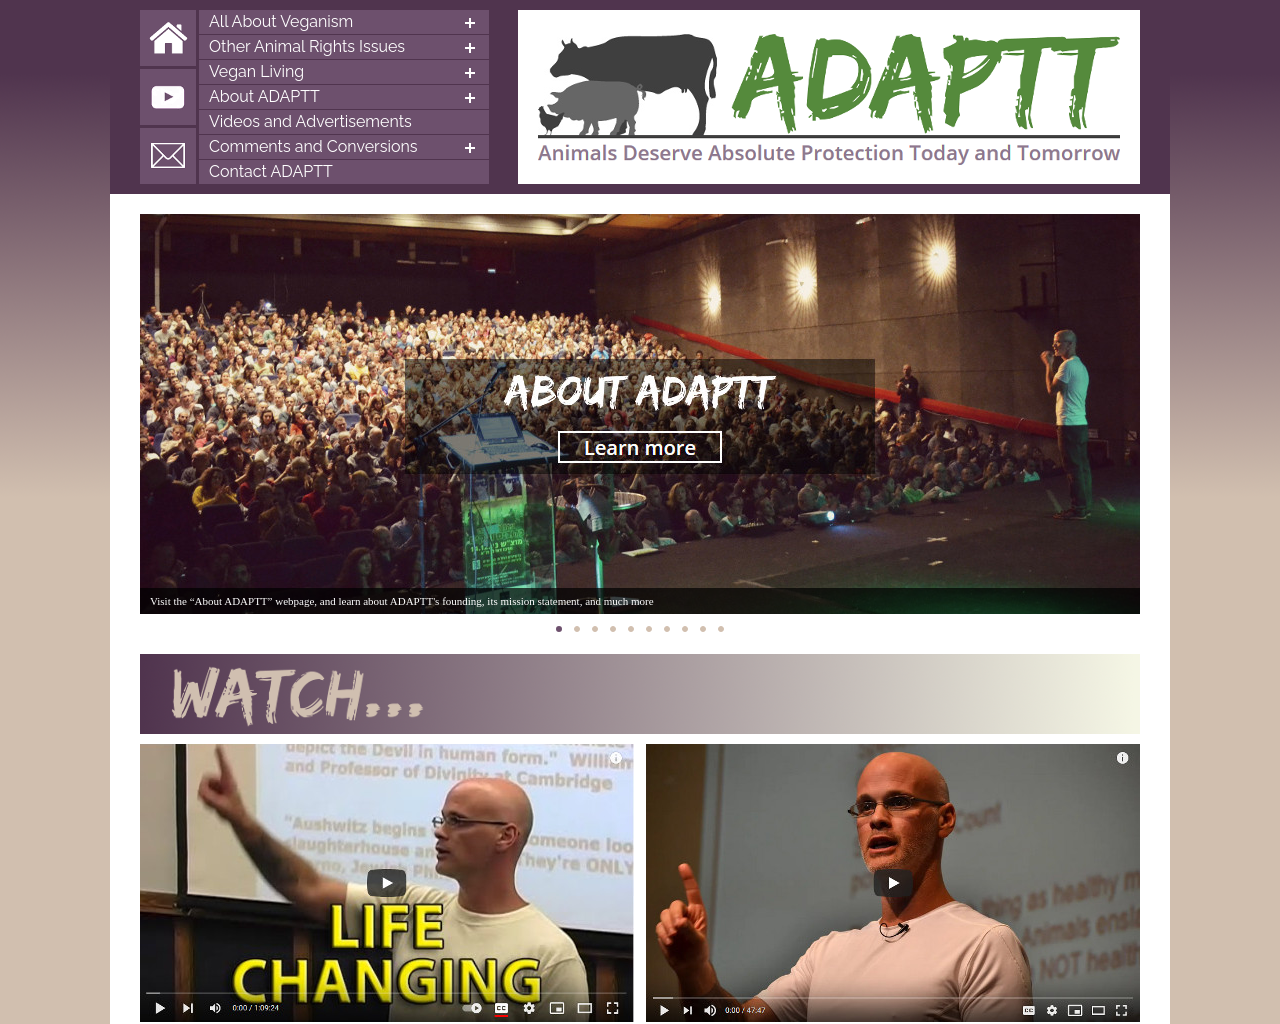 adaptt.org